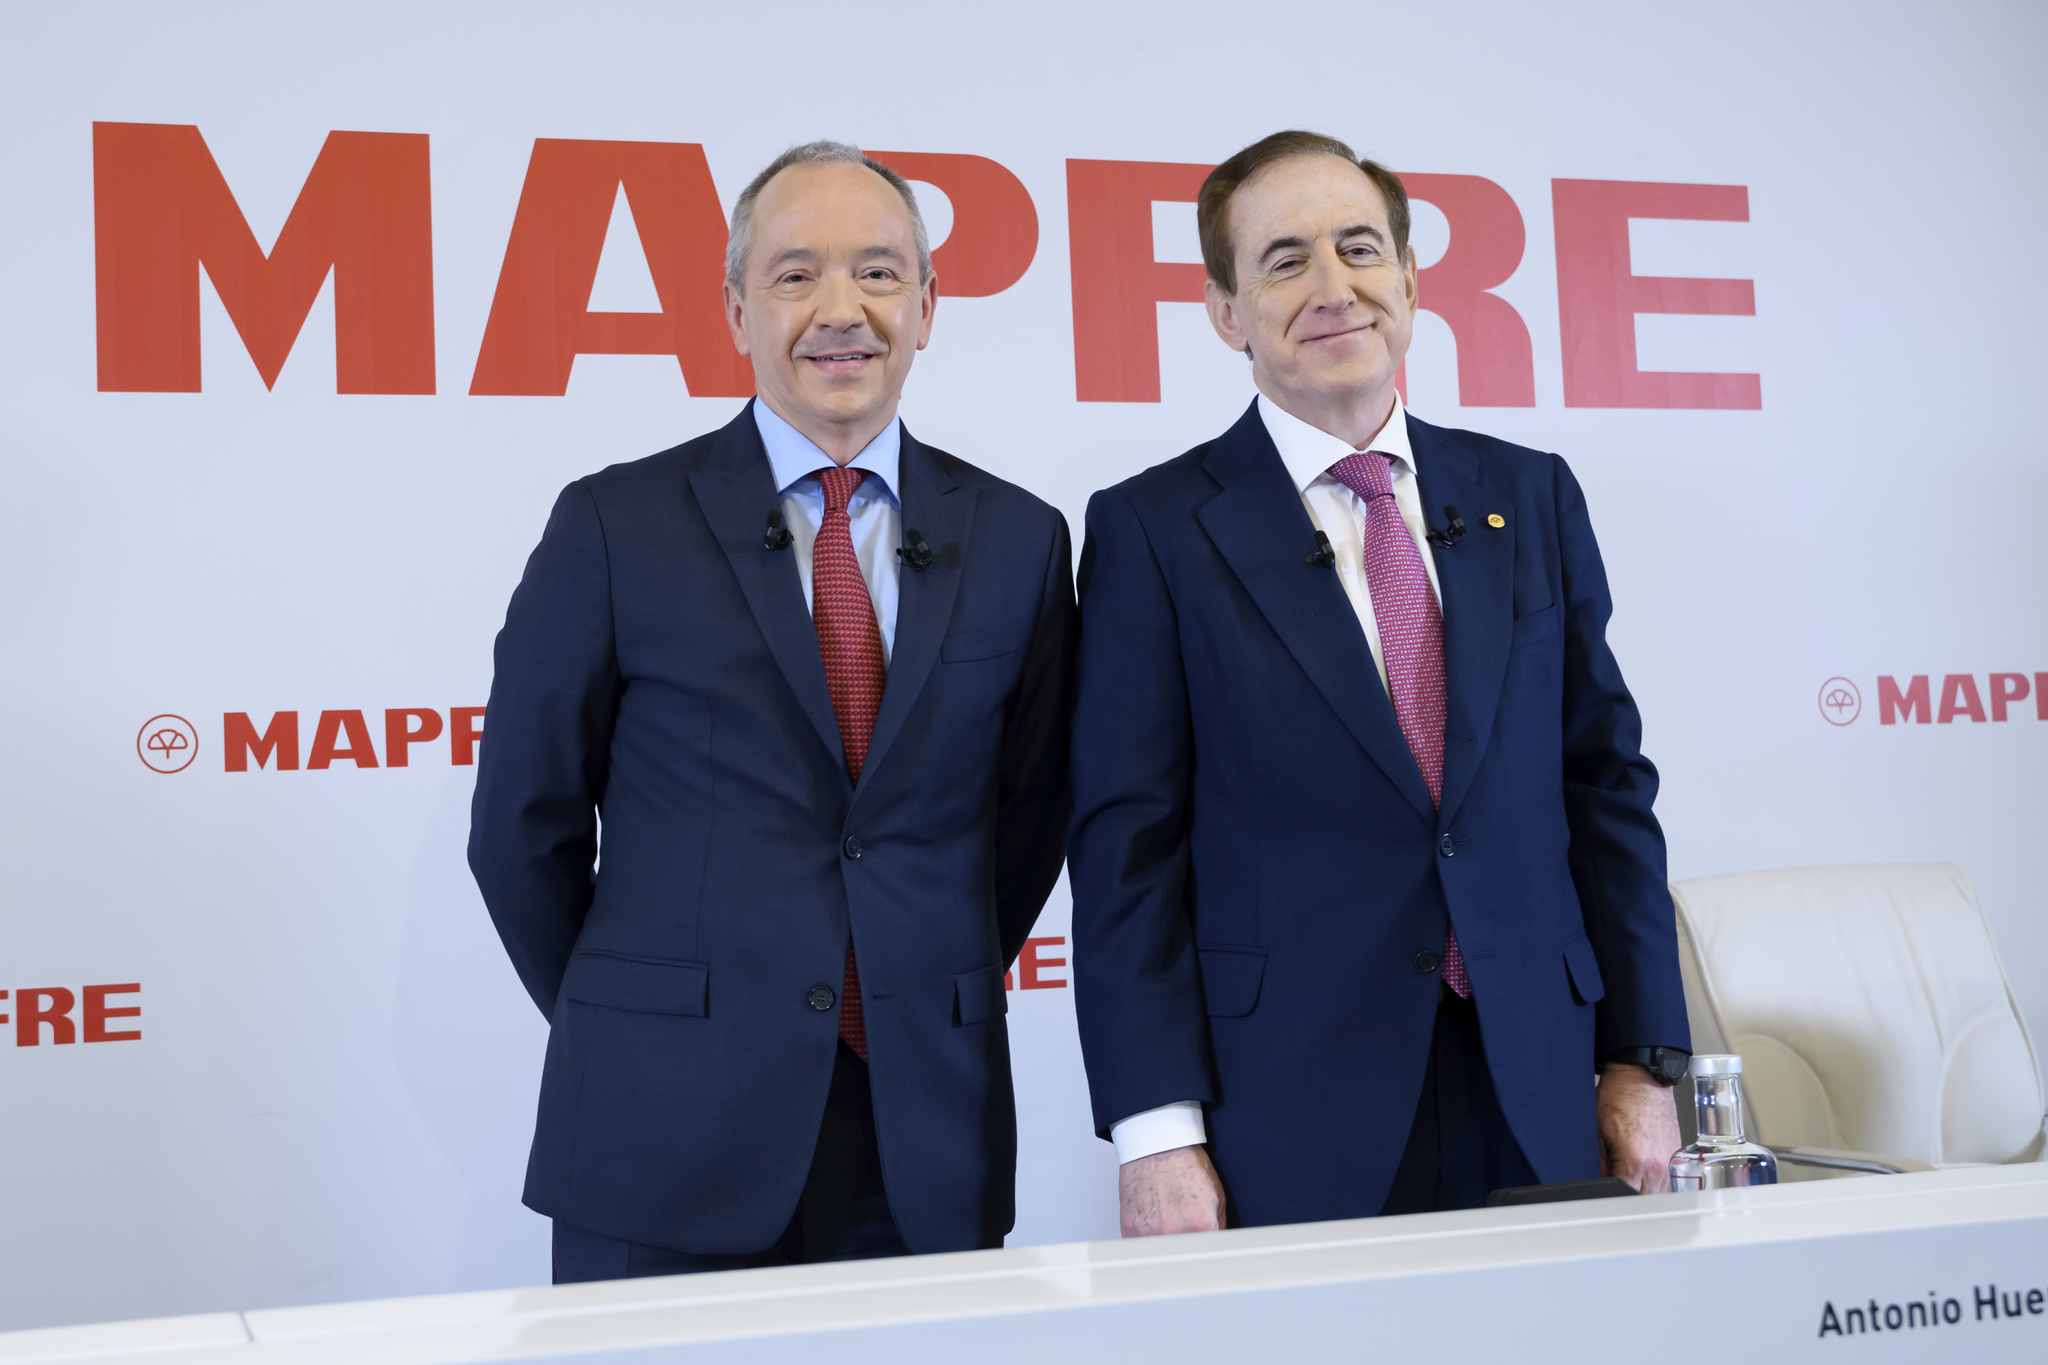 Fernando Mata y Antonio Huertas, vicepresidente tercero y presidente de Mapfre.